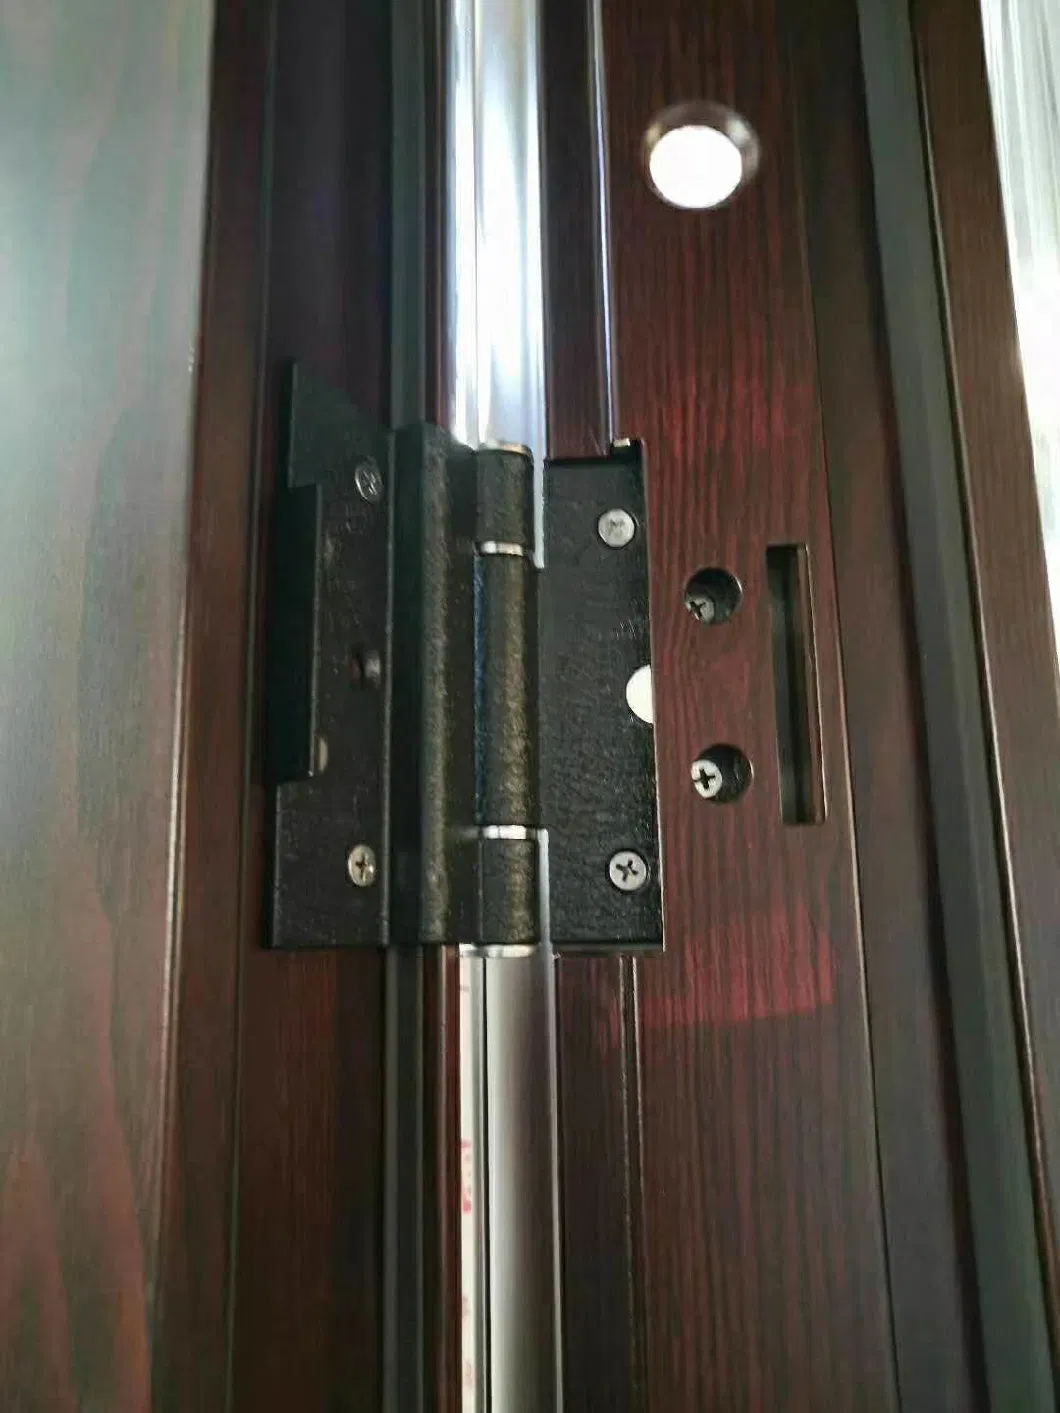 Steel Security Front Doors for Home Front Metal Door with Hardwares